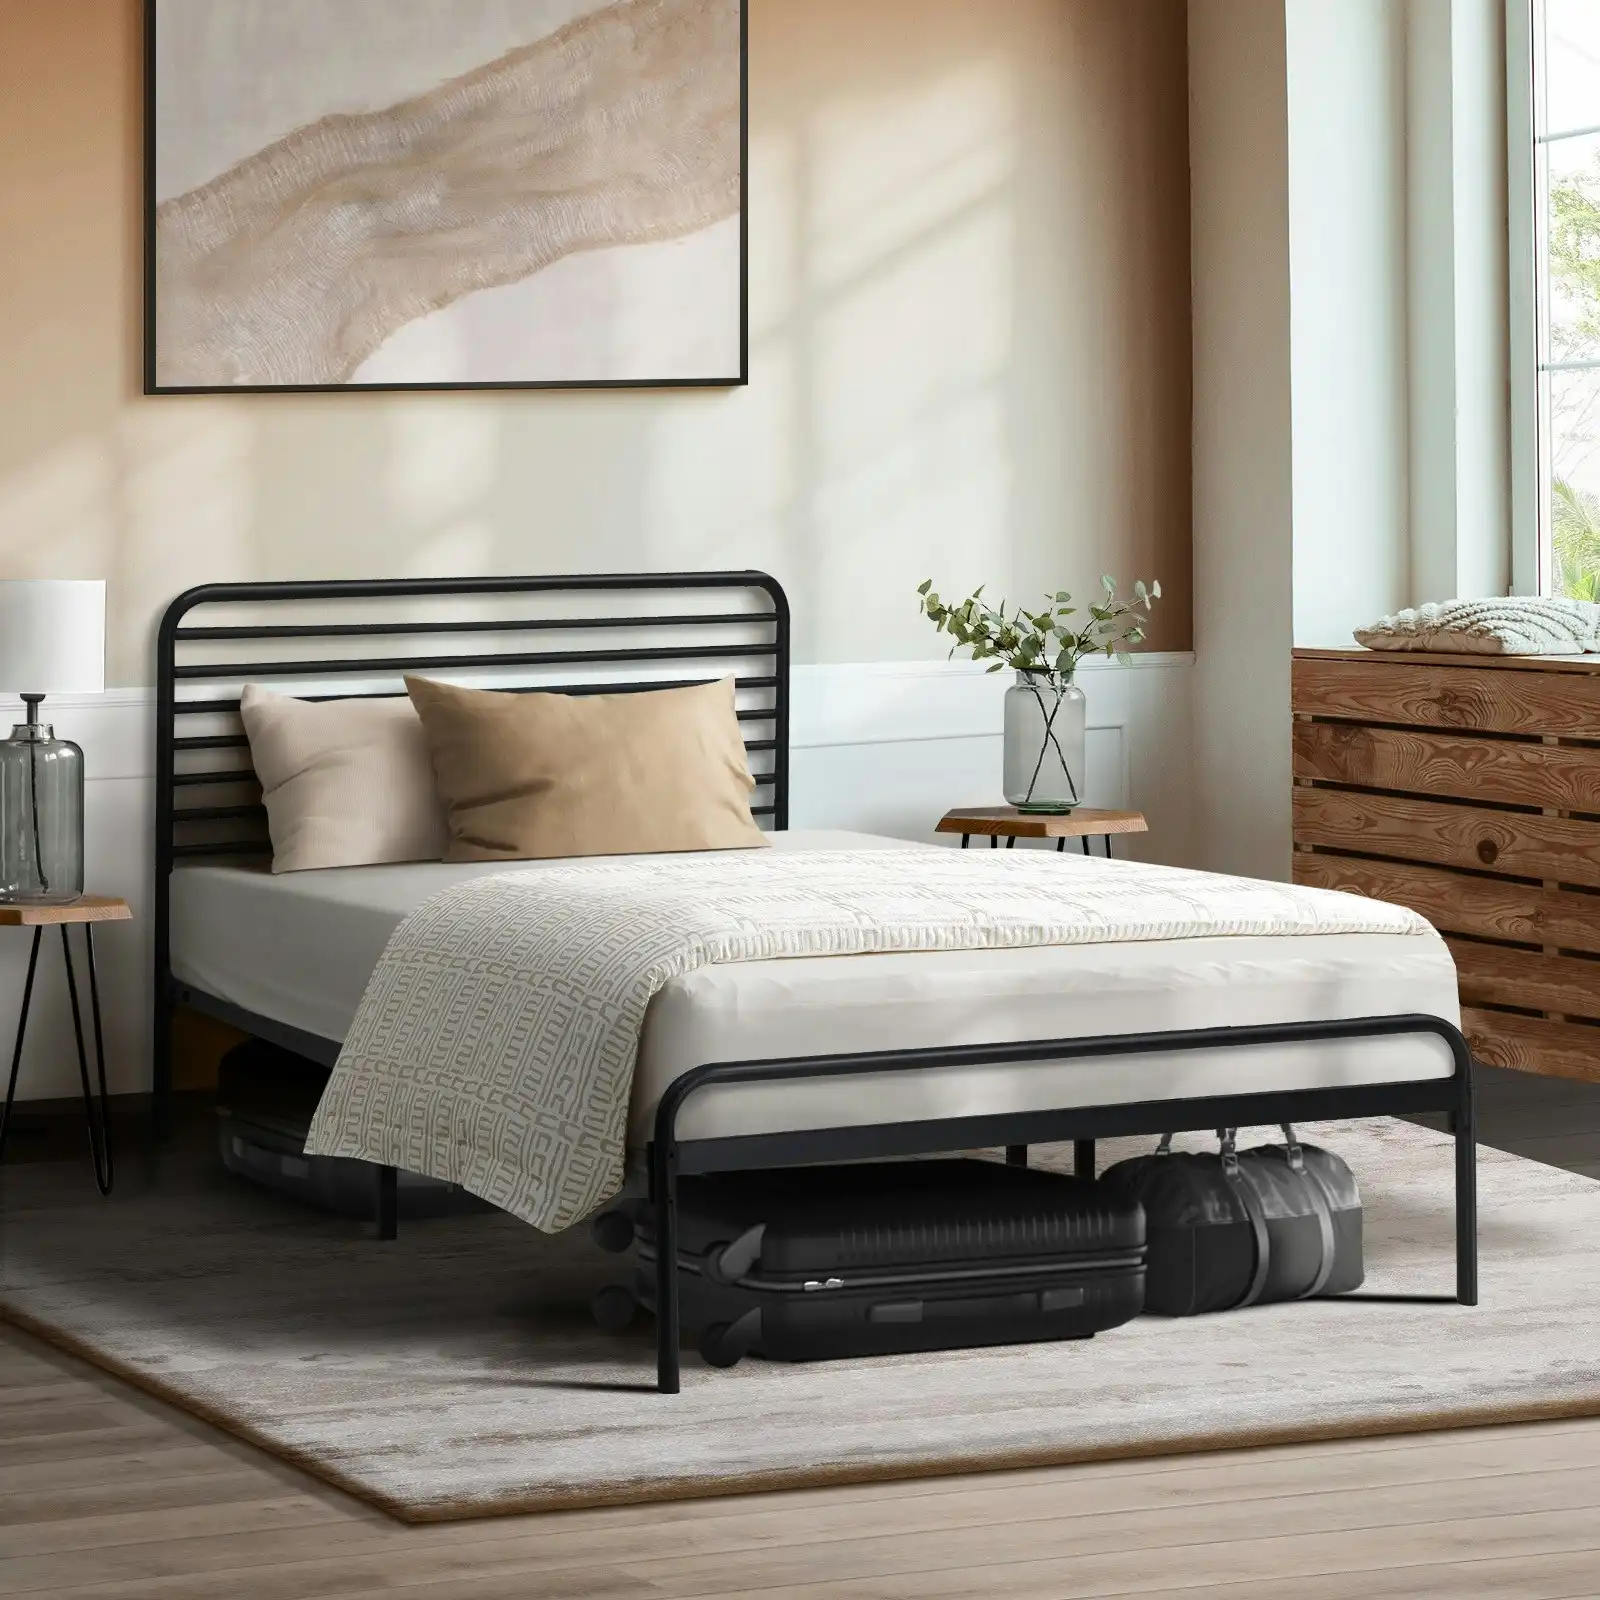 Oikiture Metal Bed Frame King Single Size Beds Platform